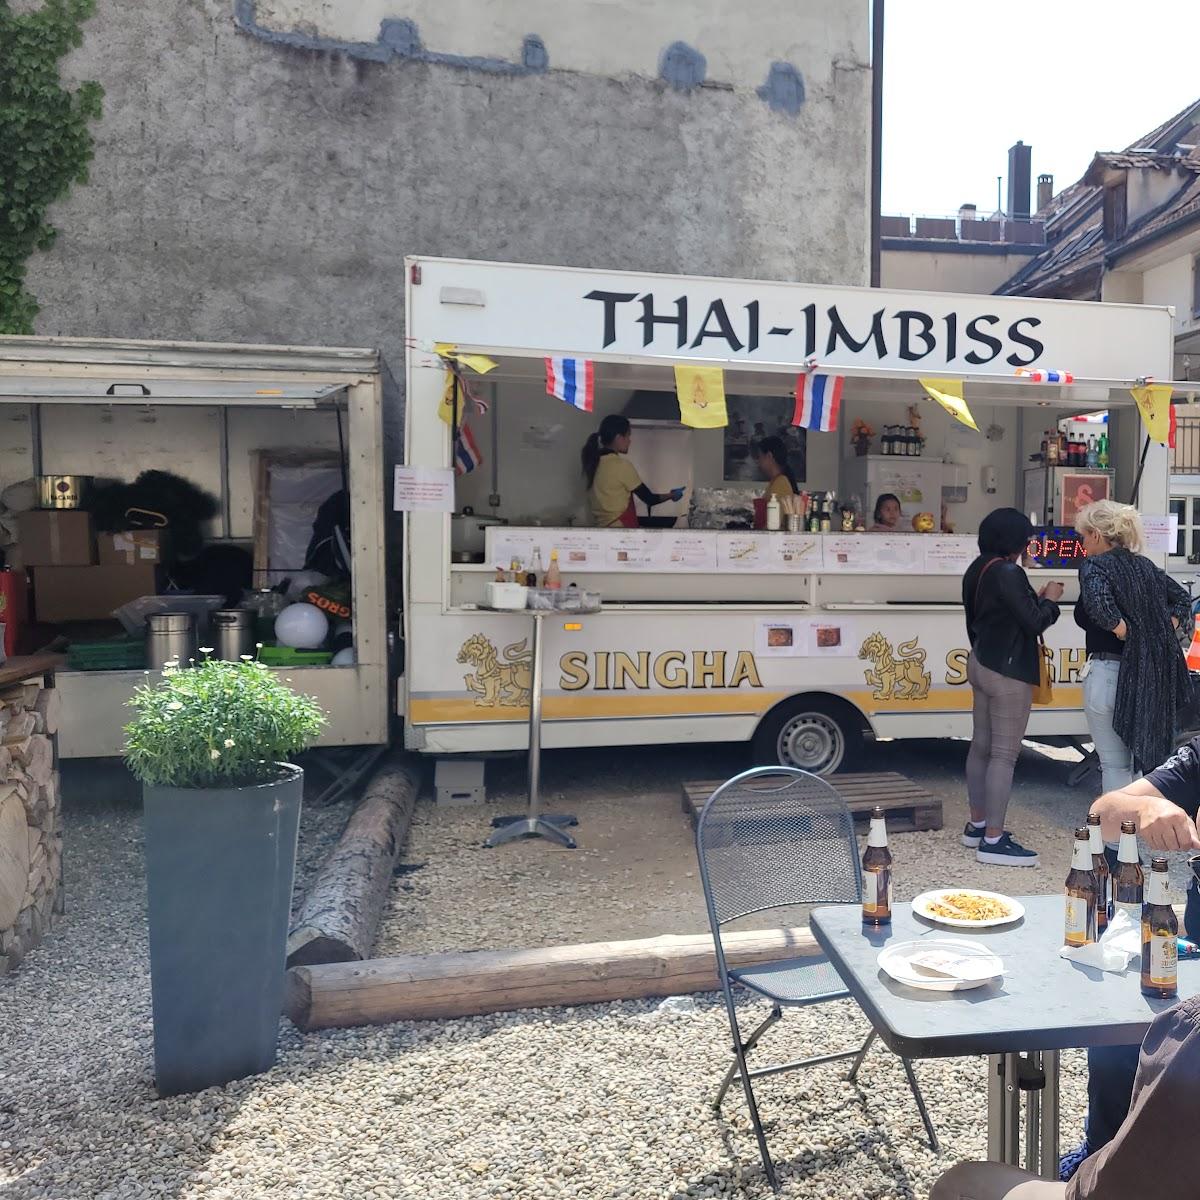 Restaurant "Thai-Imbiss Take Away" in Laufen